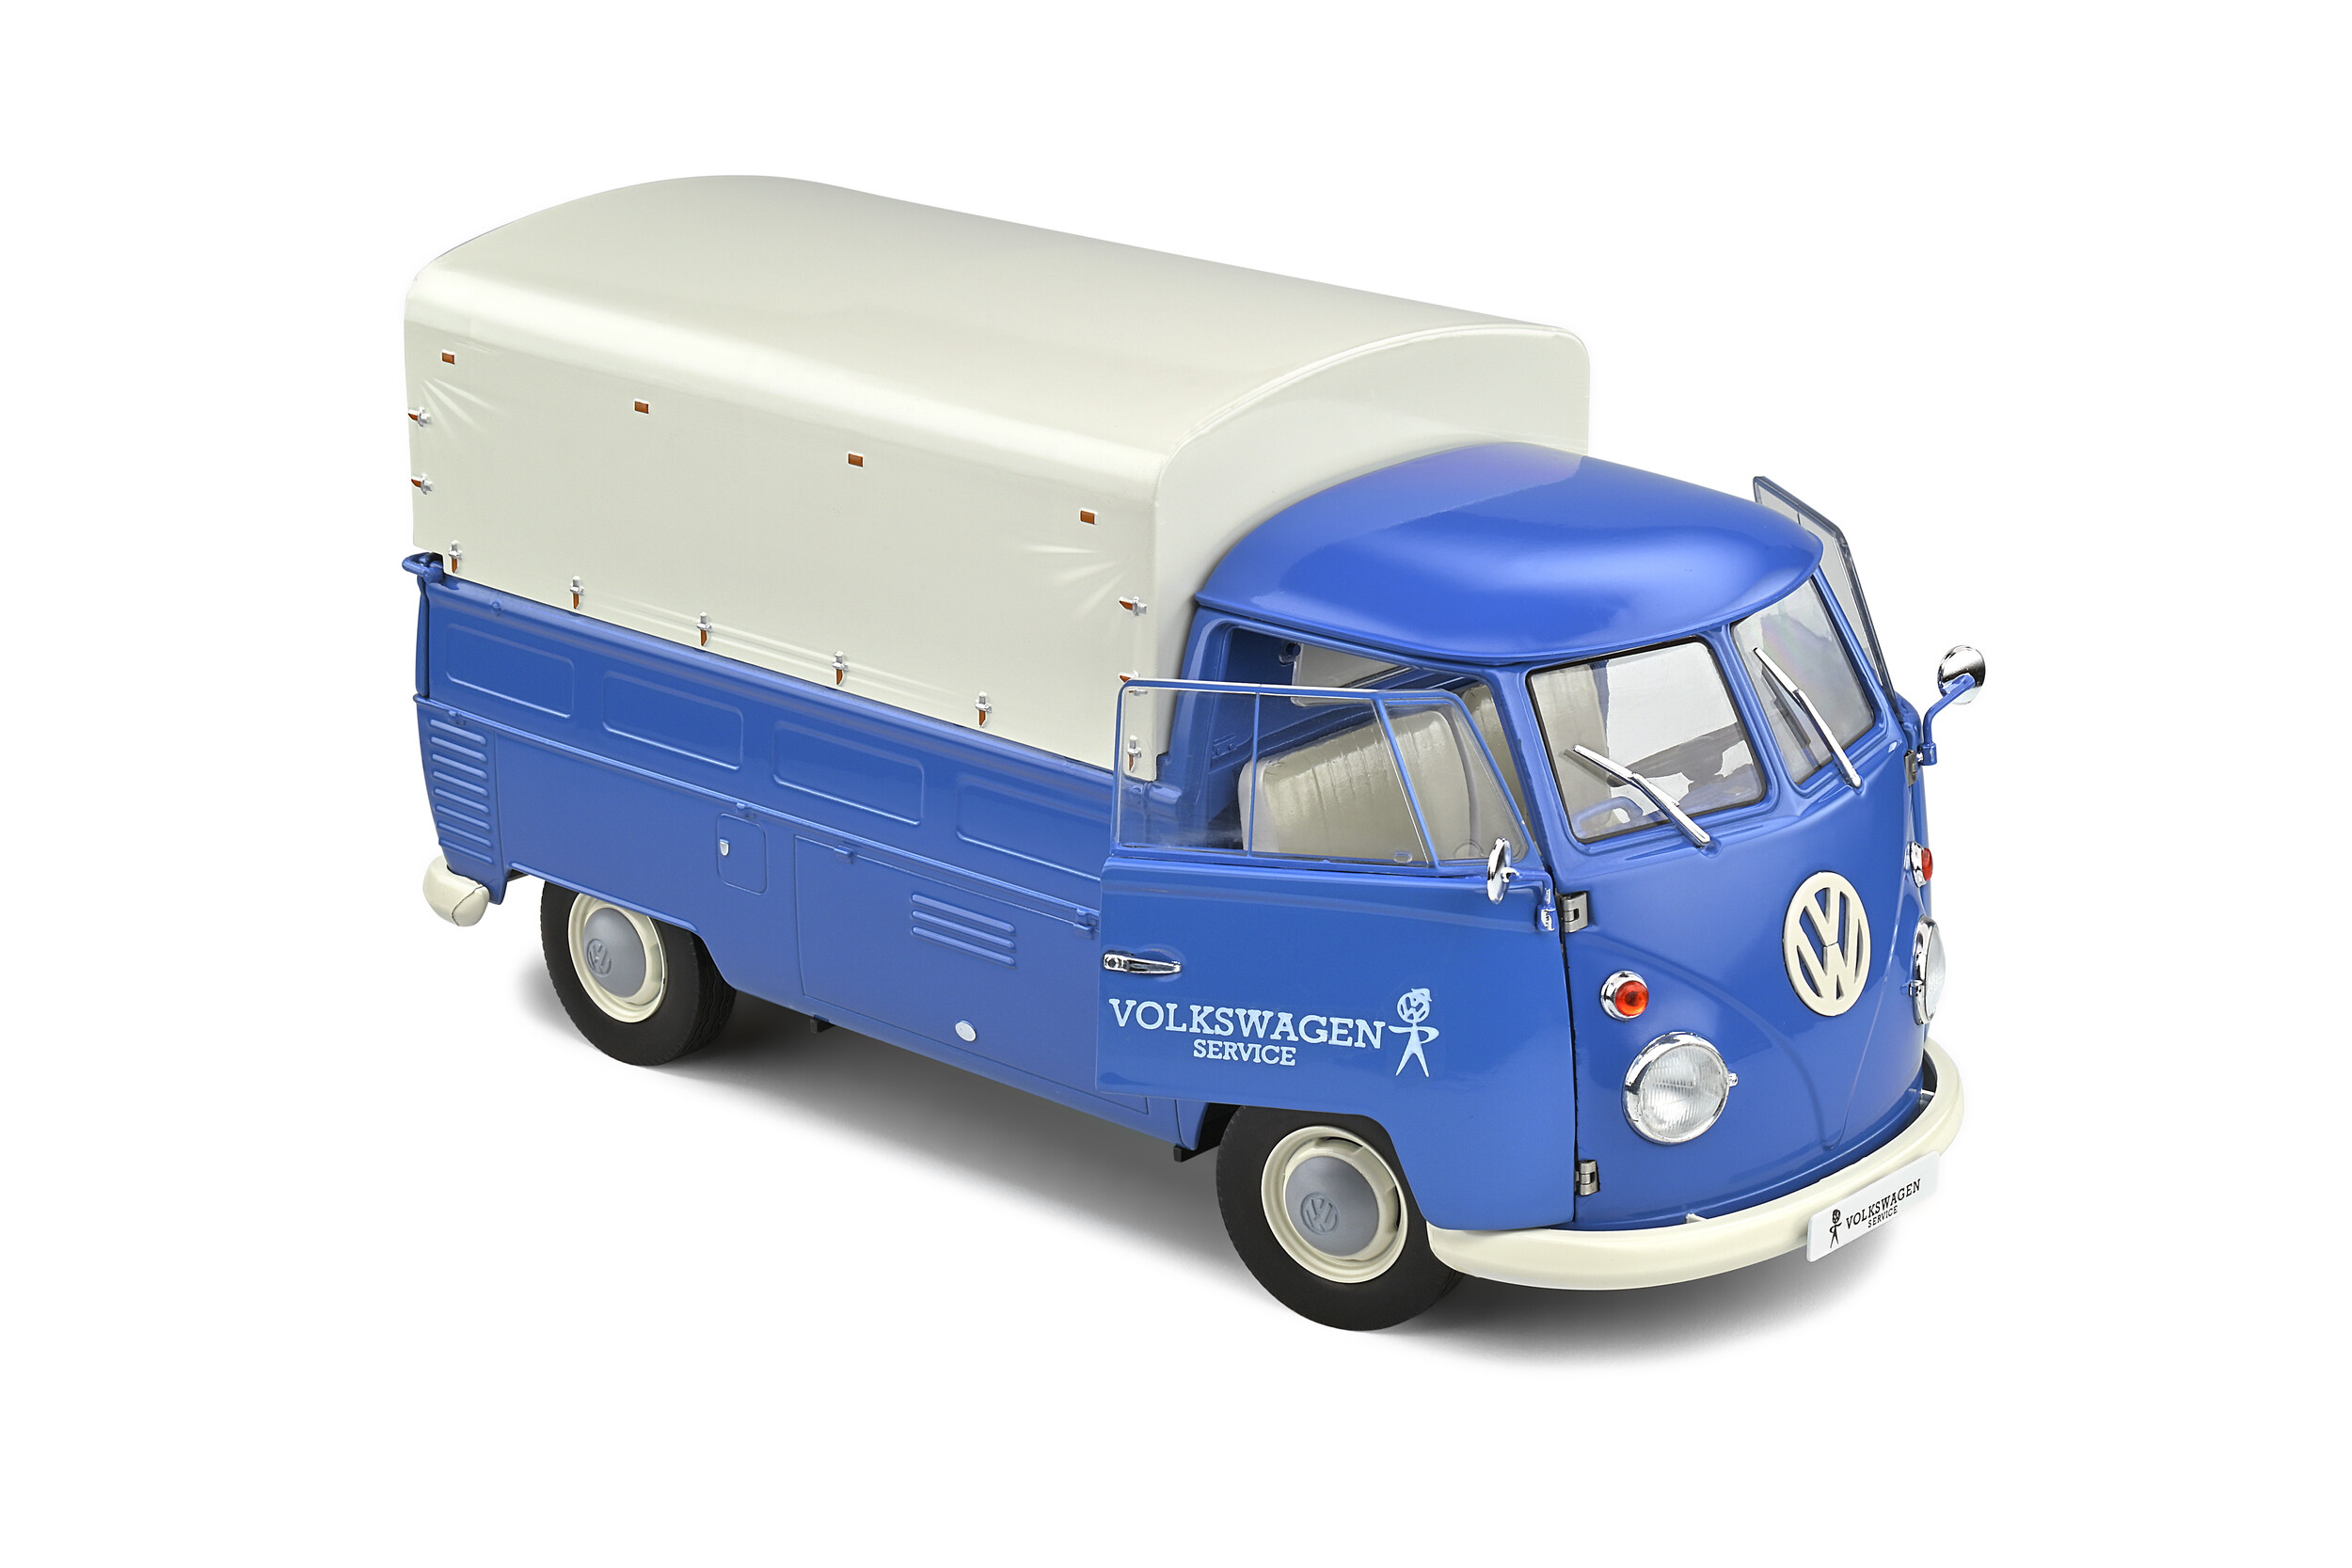 Volkswagen T1 Pick Up Volkswagen Service - 1950 - Solido